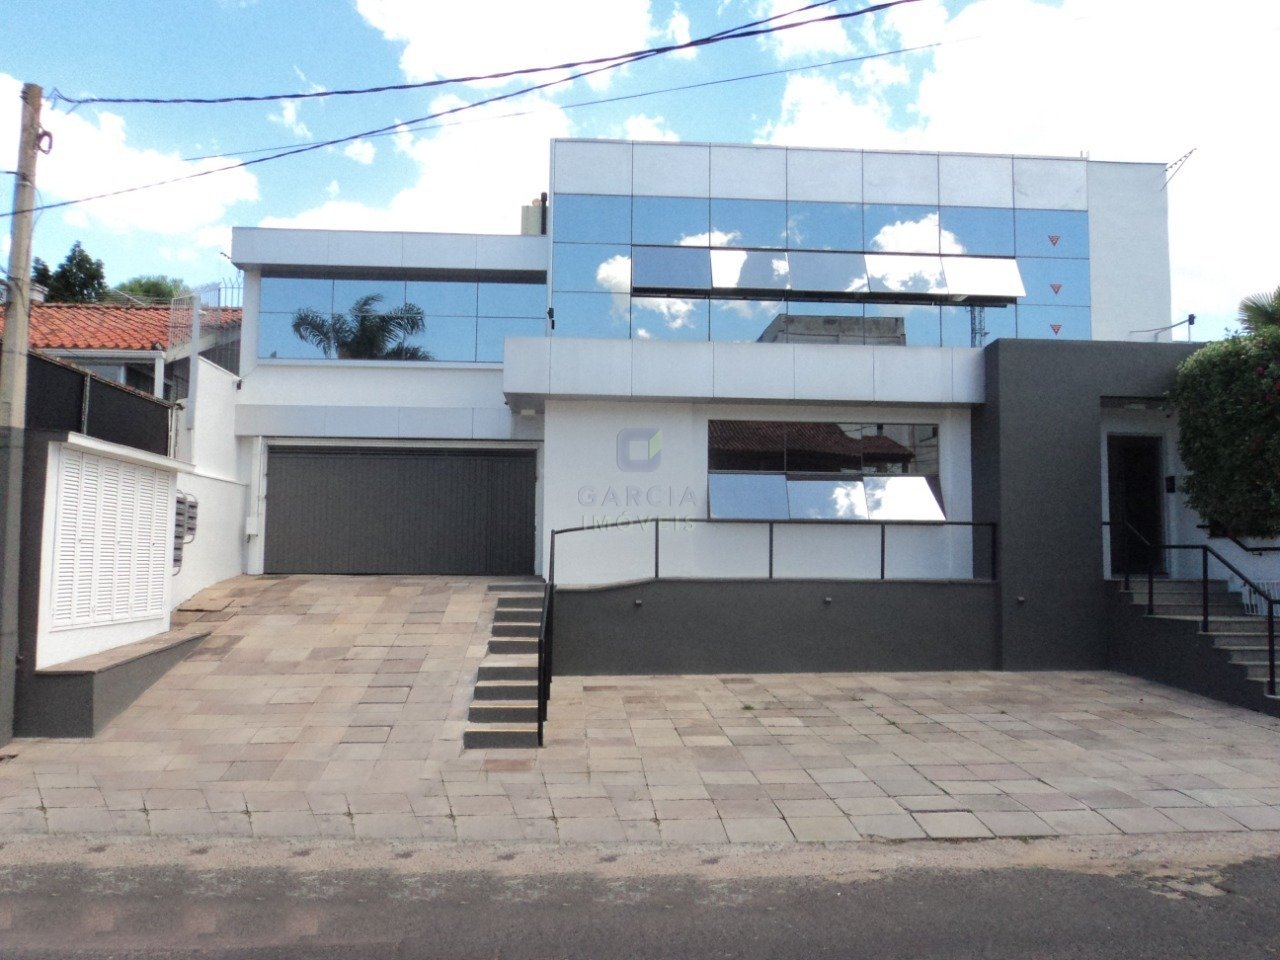 Imóveis, Página 138 - Imobiliária Garcia Imóveis - Porto Alegre RS